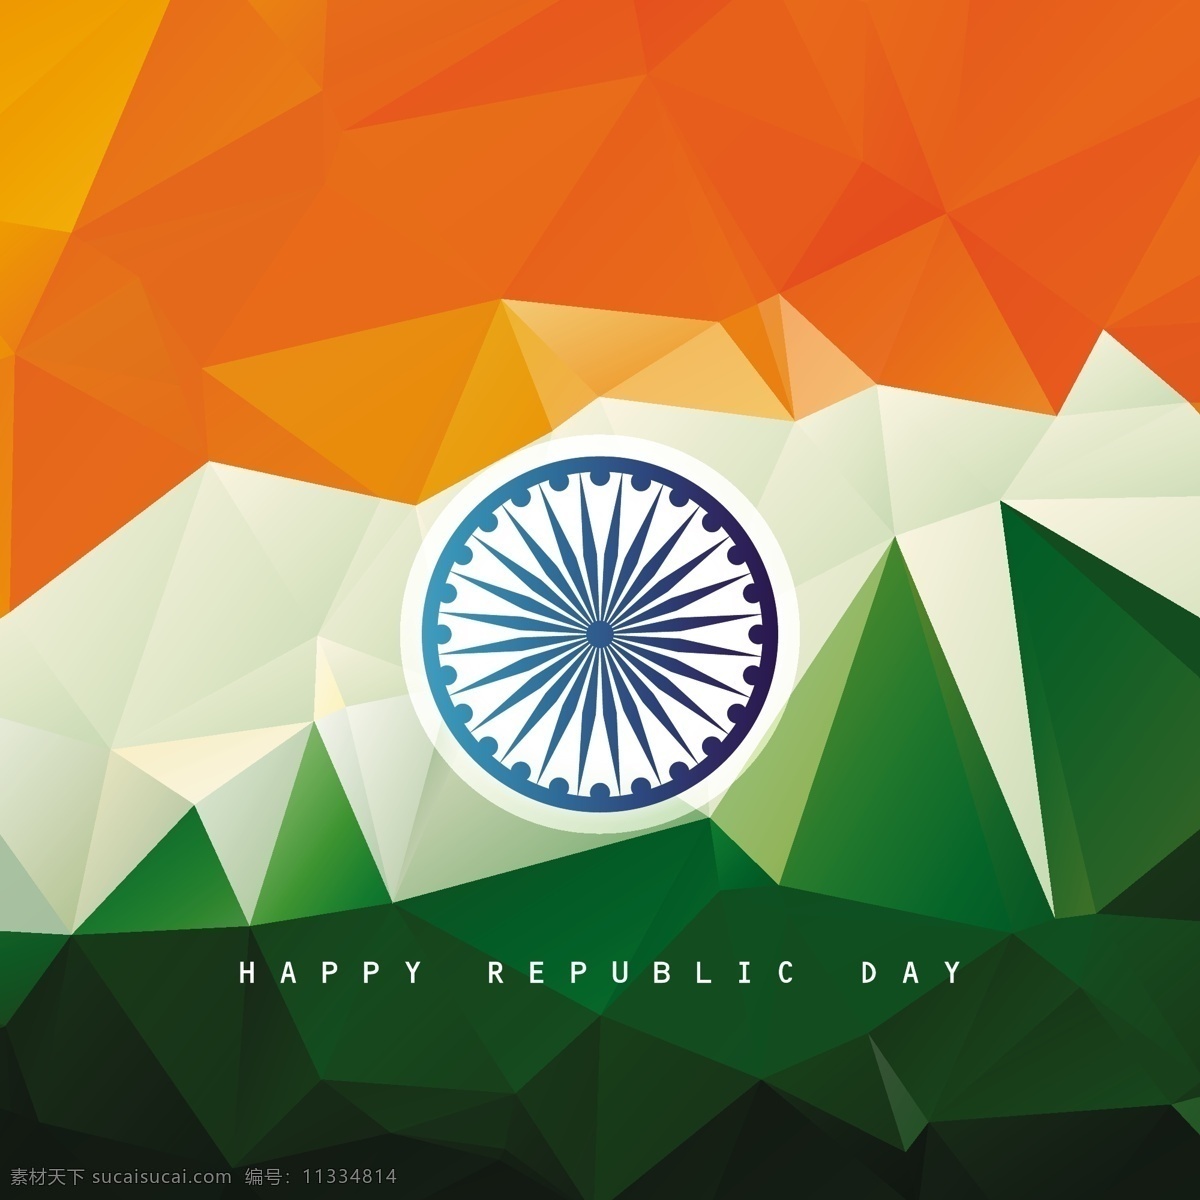 共和国 日 国旗 背景 抽象 标志 多边形 印度 节日 假日 车轮 一月